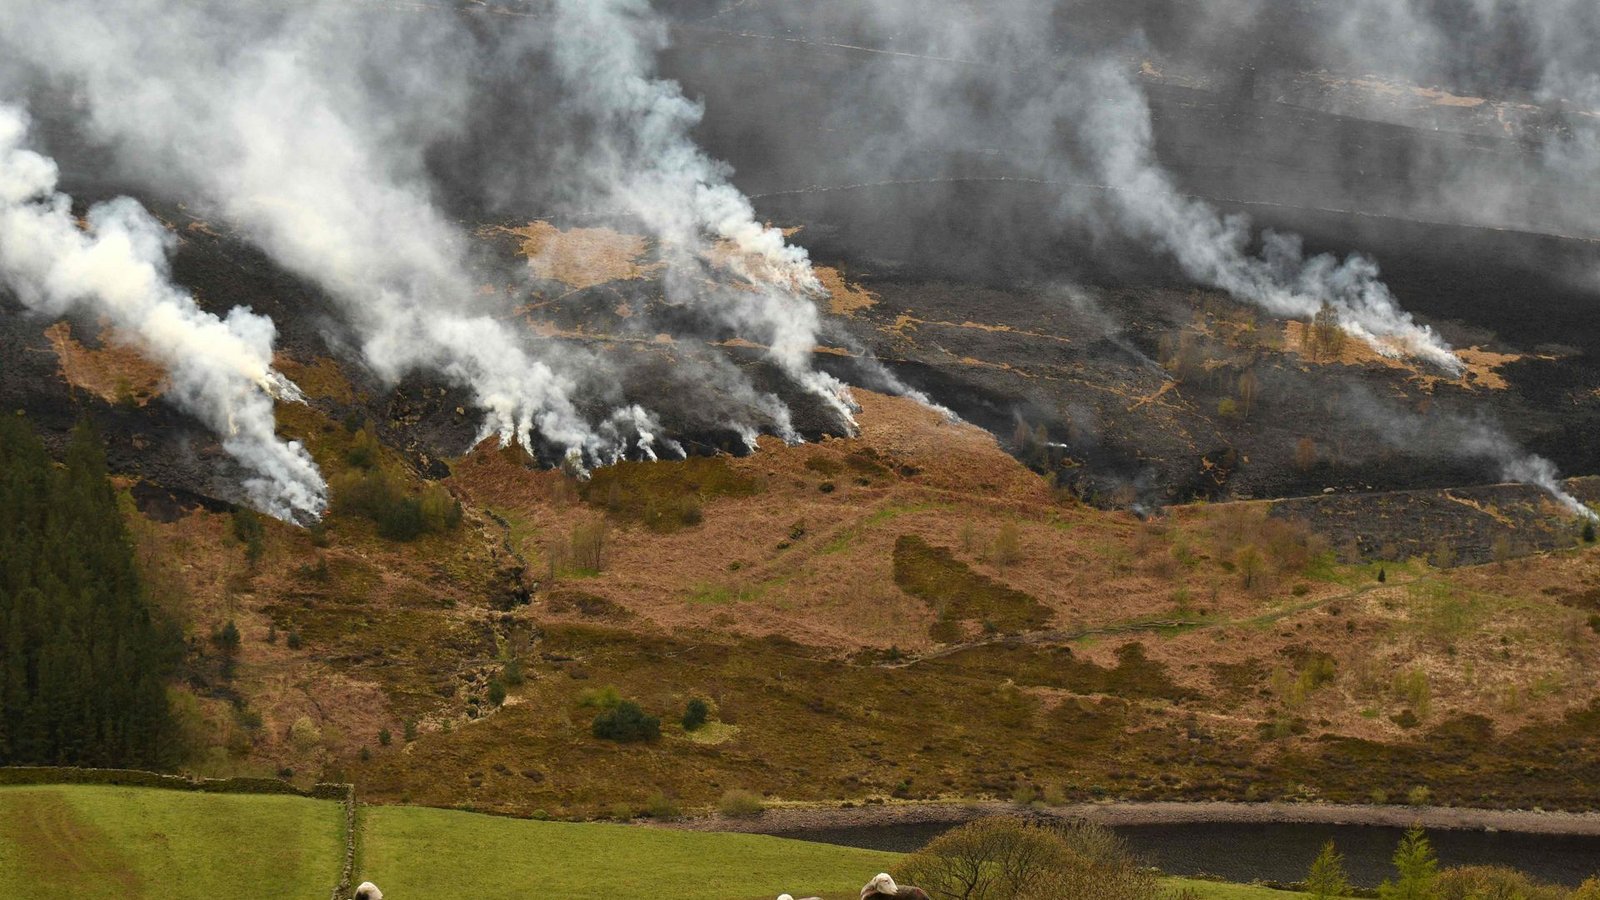 Schafe grasen in Nordengland, während  Rauch in Folge eines Moorfeuers beim Marsden Moor erneut aufkeimt.Foto: AFP/OLI SCARFF